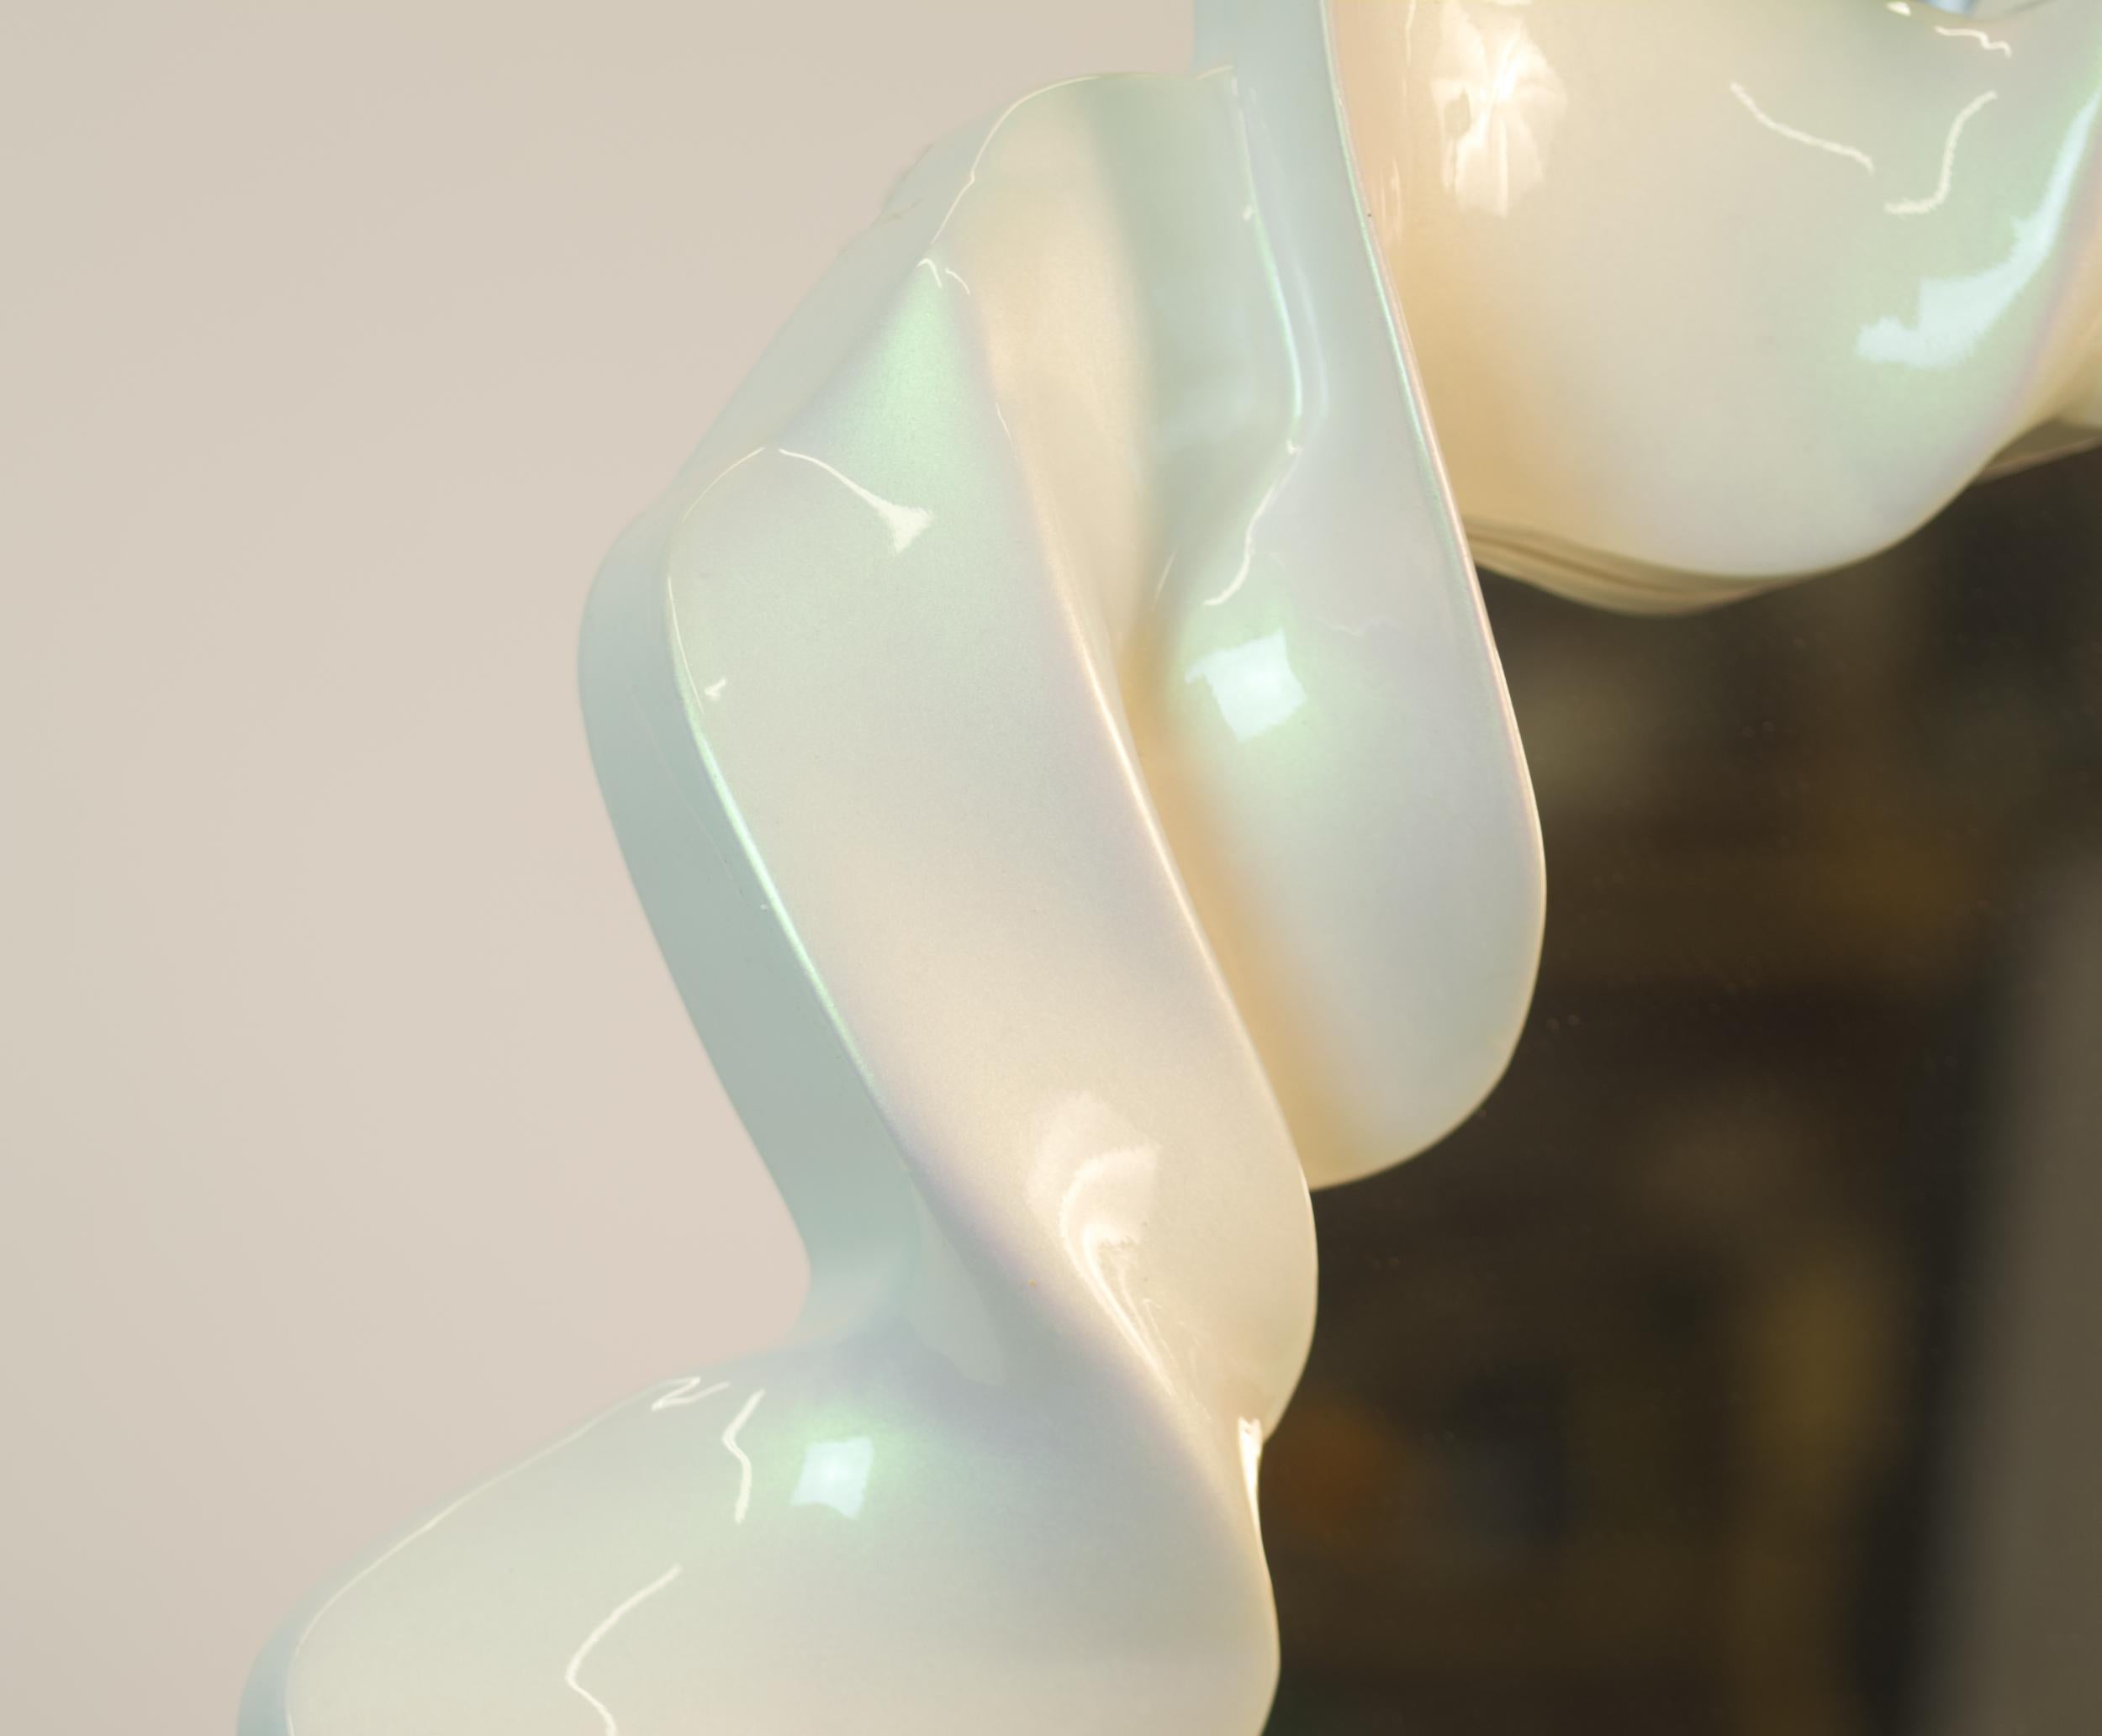 Les miroirs Wave II sont une série de créations artisanales uniques destinées à des environnements spécifiques, réalisées sur mesure pour interagir avec la lumière, les limites et les personnes dans les intérieurs. La multitude de couleurs, de